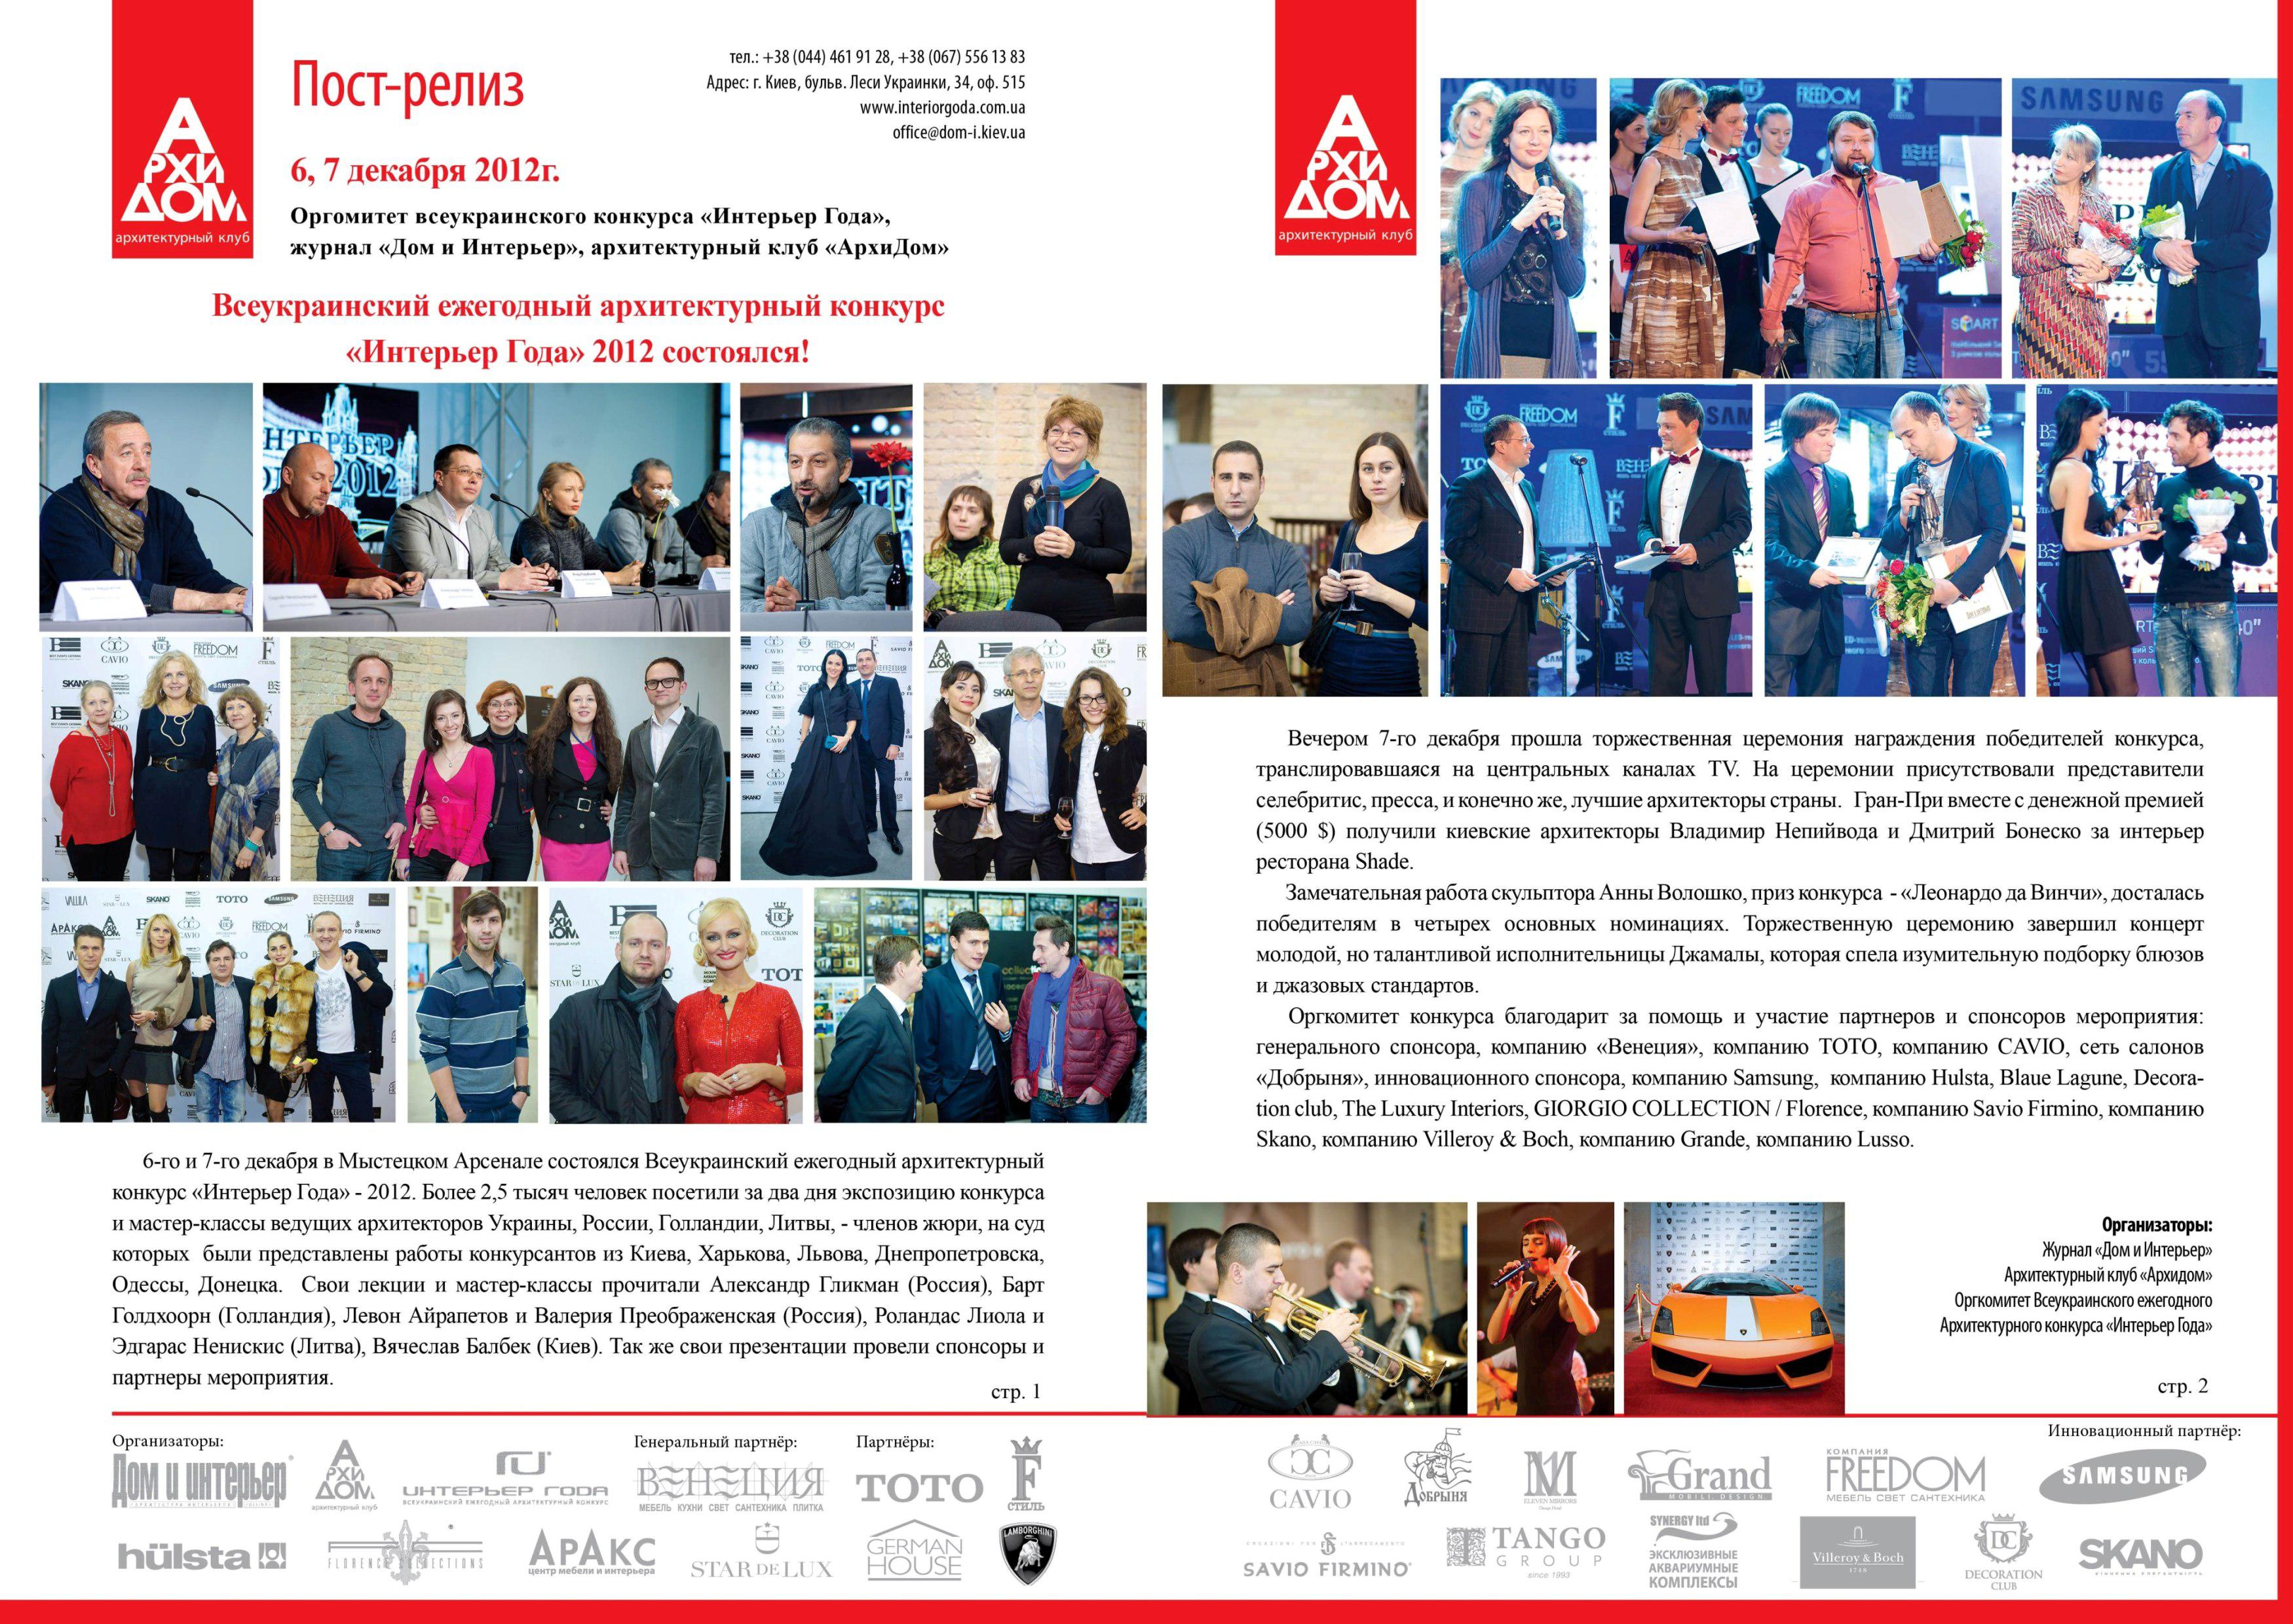 ТЦ "Аракс" - серед організаторів конкурсу "Інтер'єр року 2012"